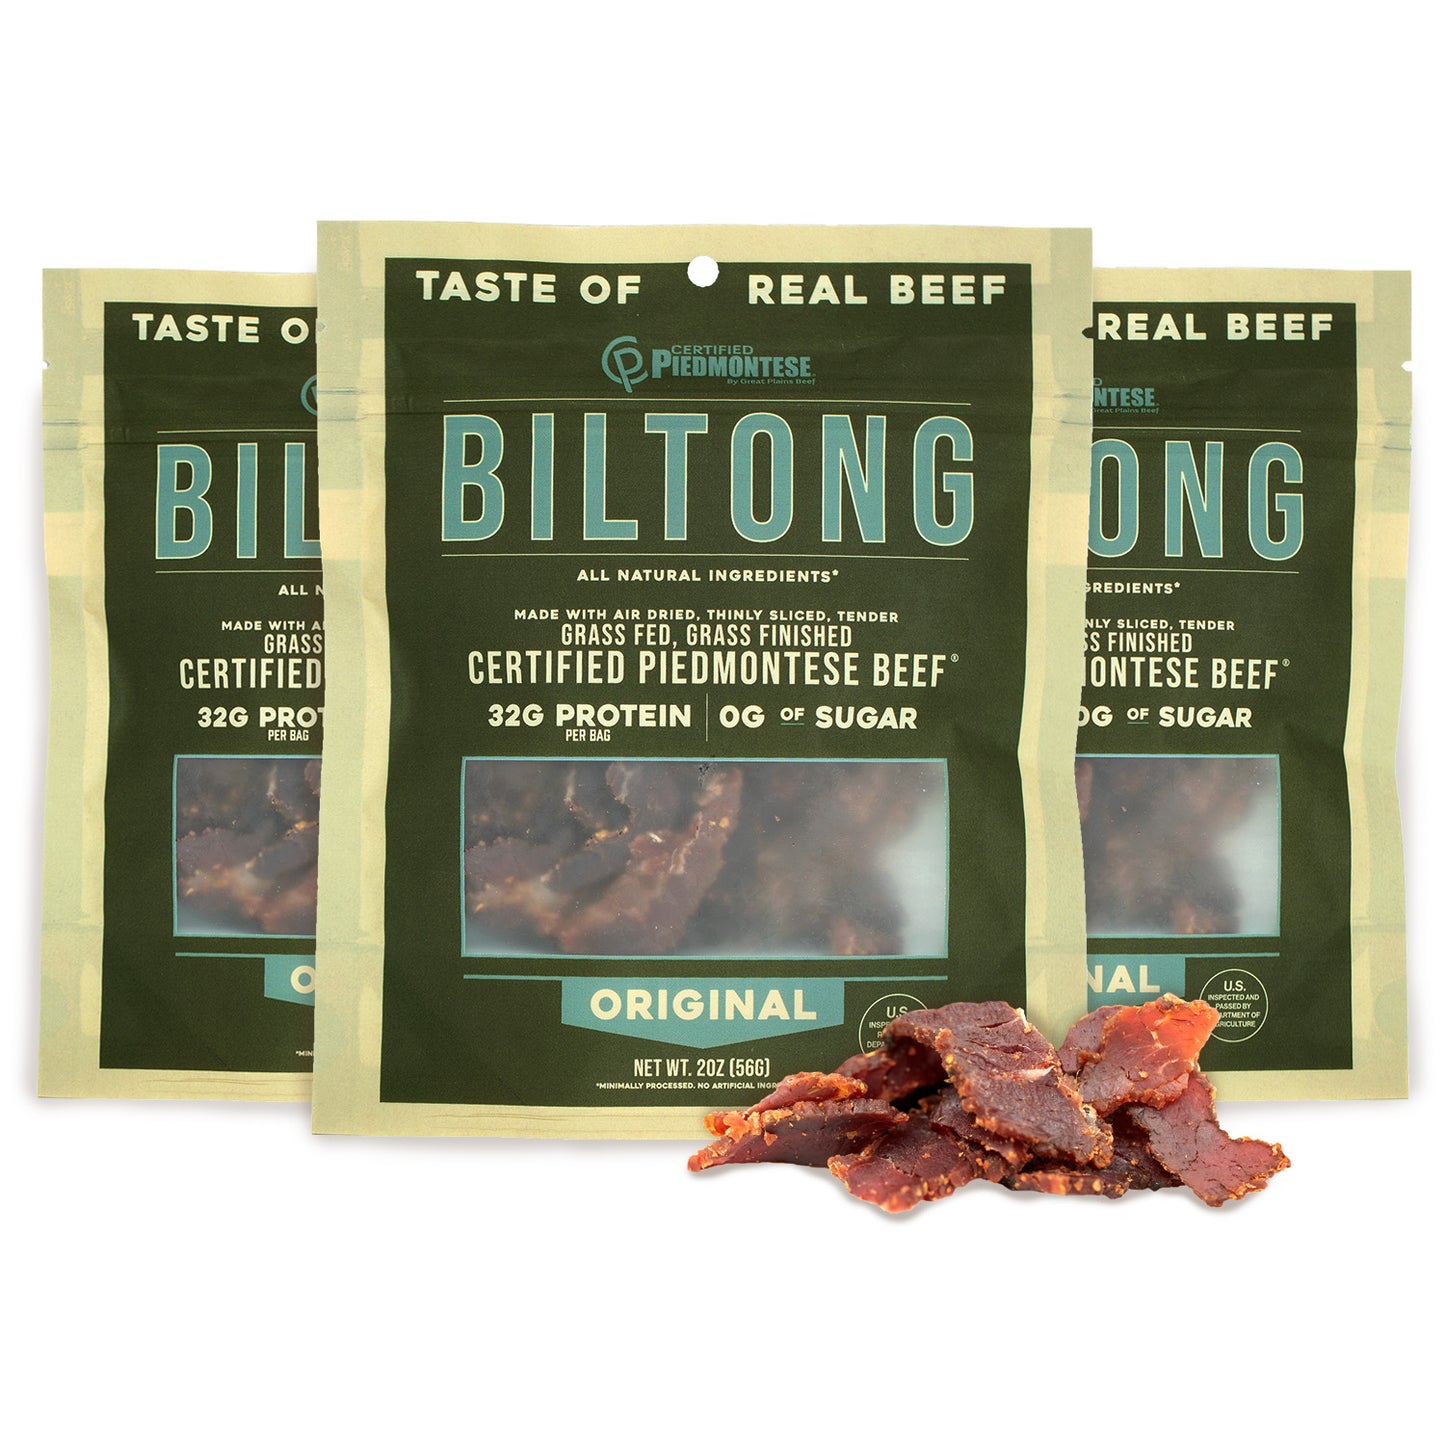 
                  
                    2 Original Beef Biltong (2oz.)
                  
                